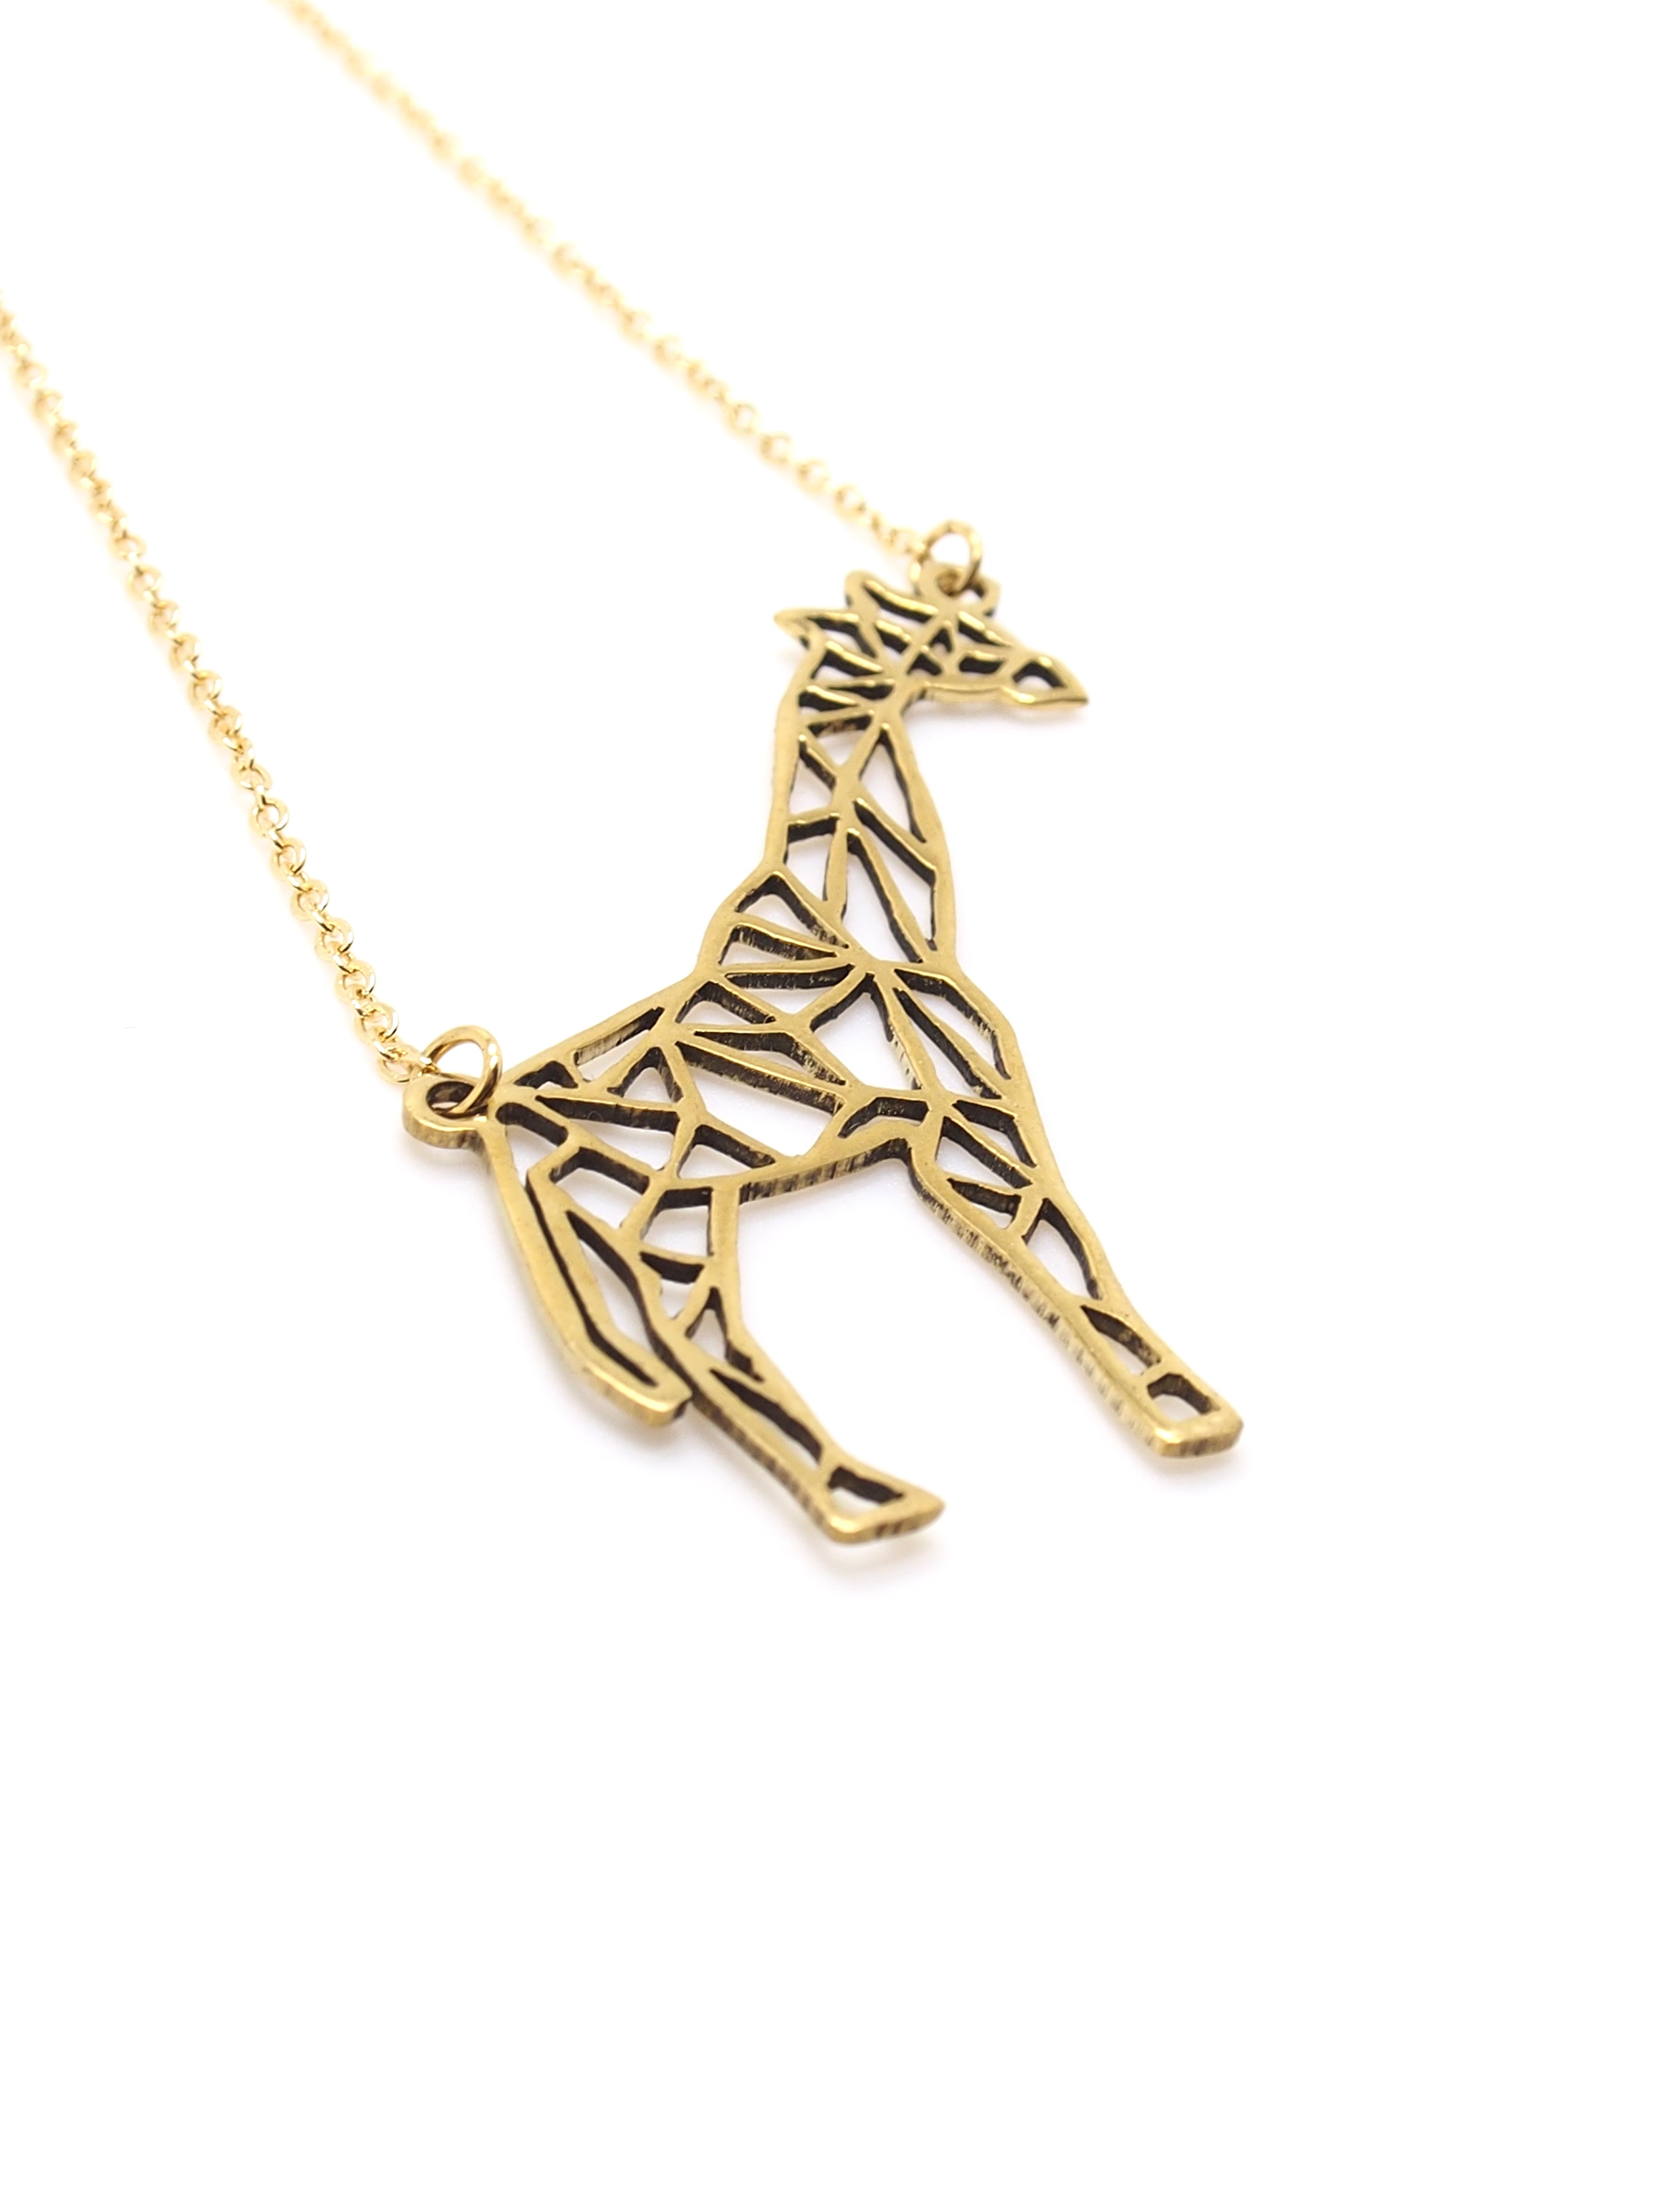 Hansel & Smith - Giraffe Necklace